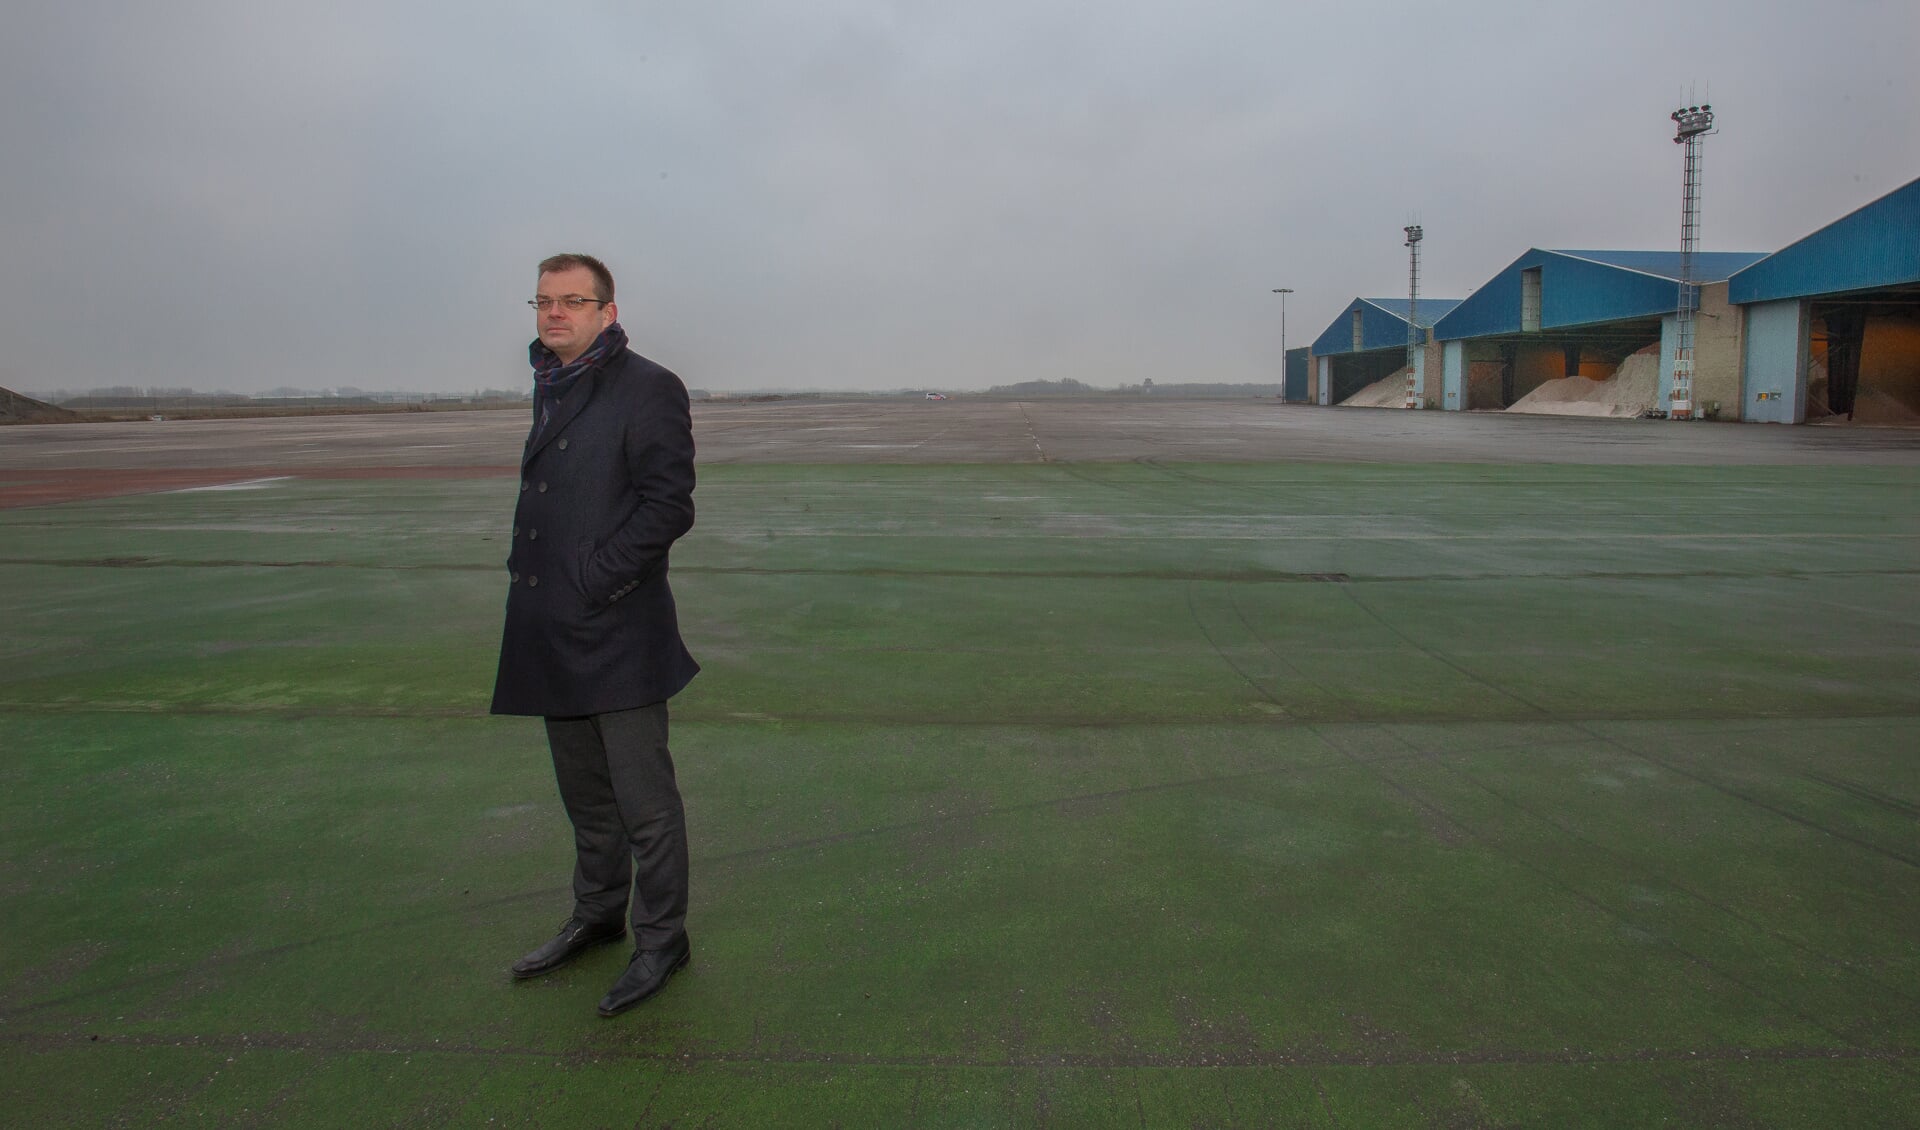 Wethouder Klaas Jan van der Bent op het voormalige vliegkamp Valkenburg. 'De drone-technologie kan een enorme vlucht krijgen.'